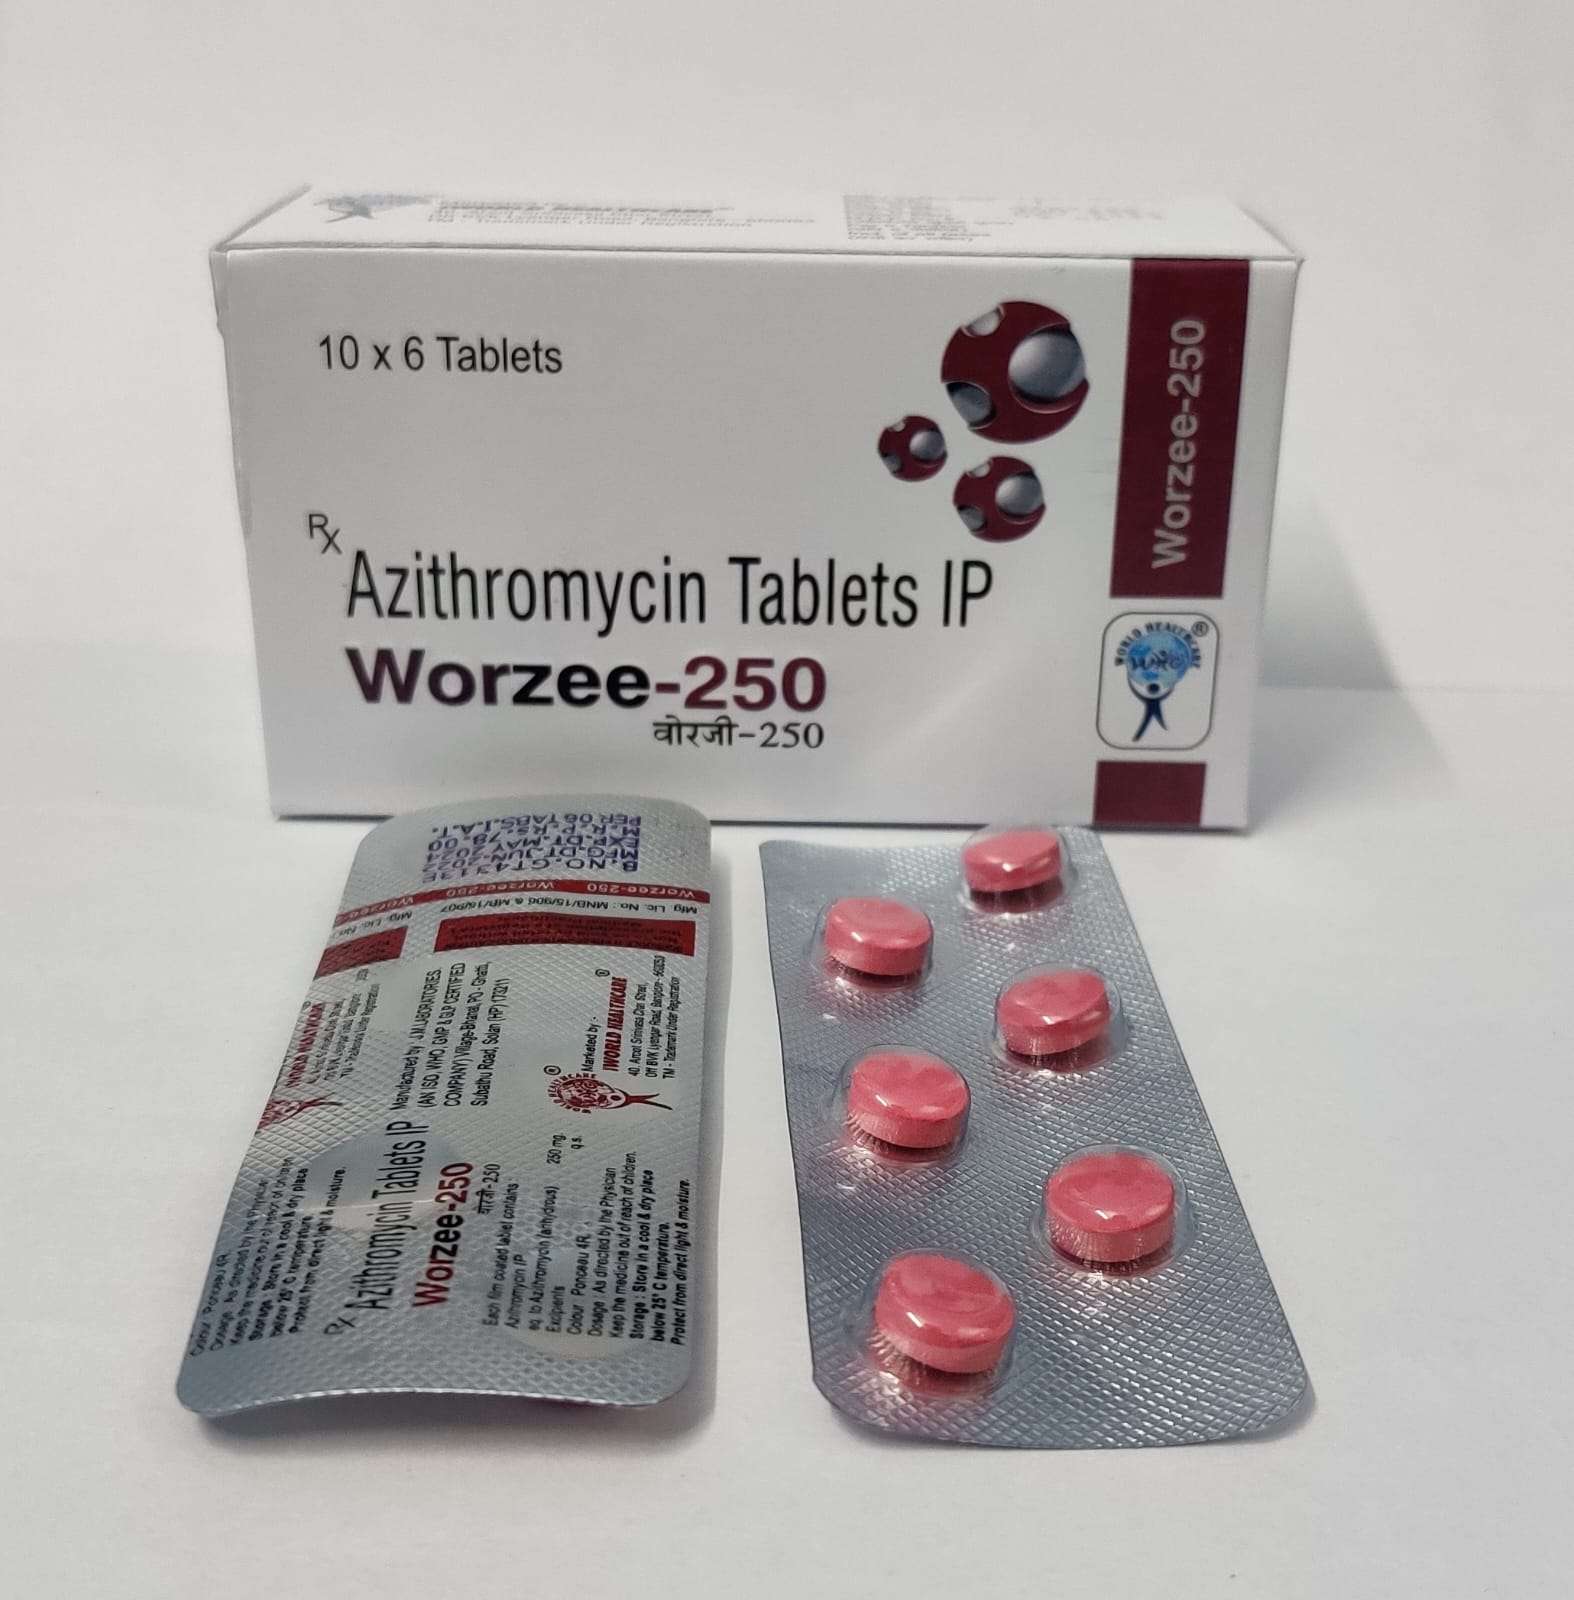 azithromycin 250mg